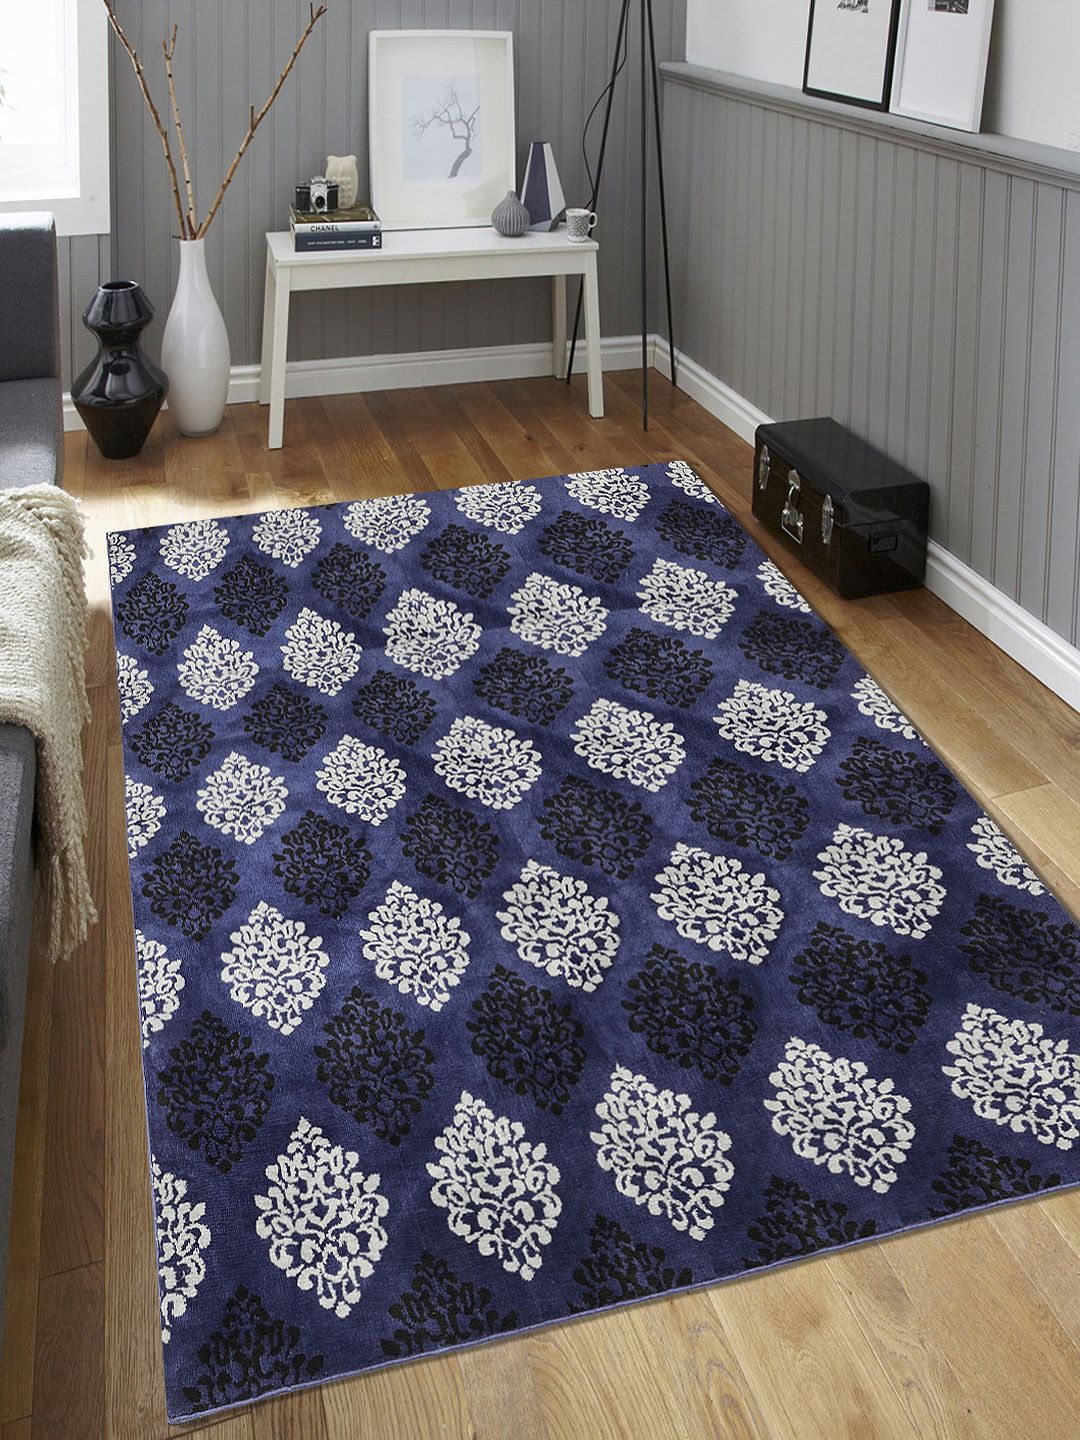 Saral Home Blue & Black Damask Pattern Anti-Skid Carpet Price in India